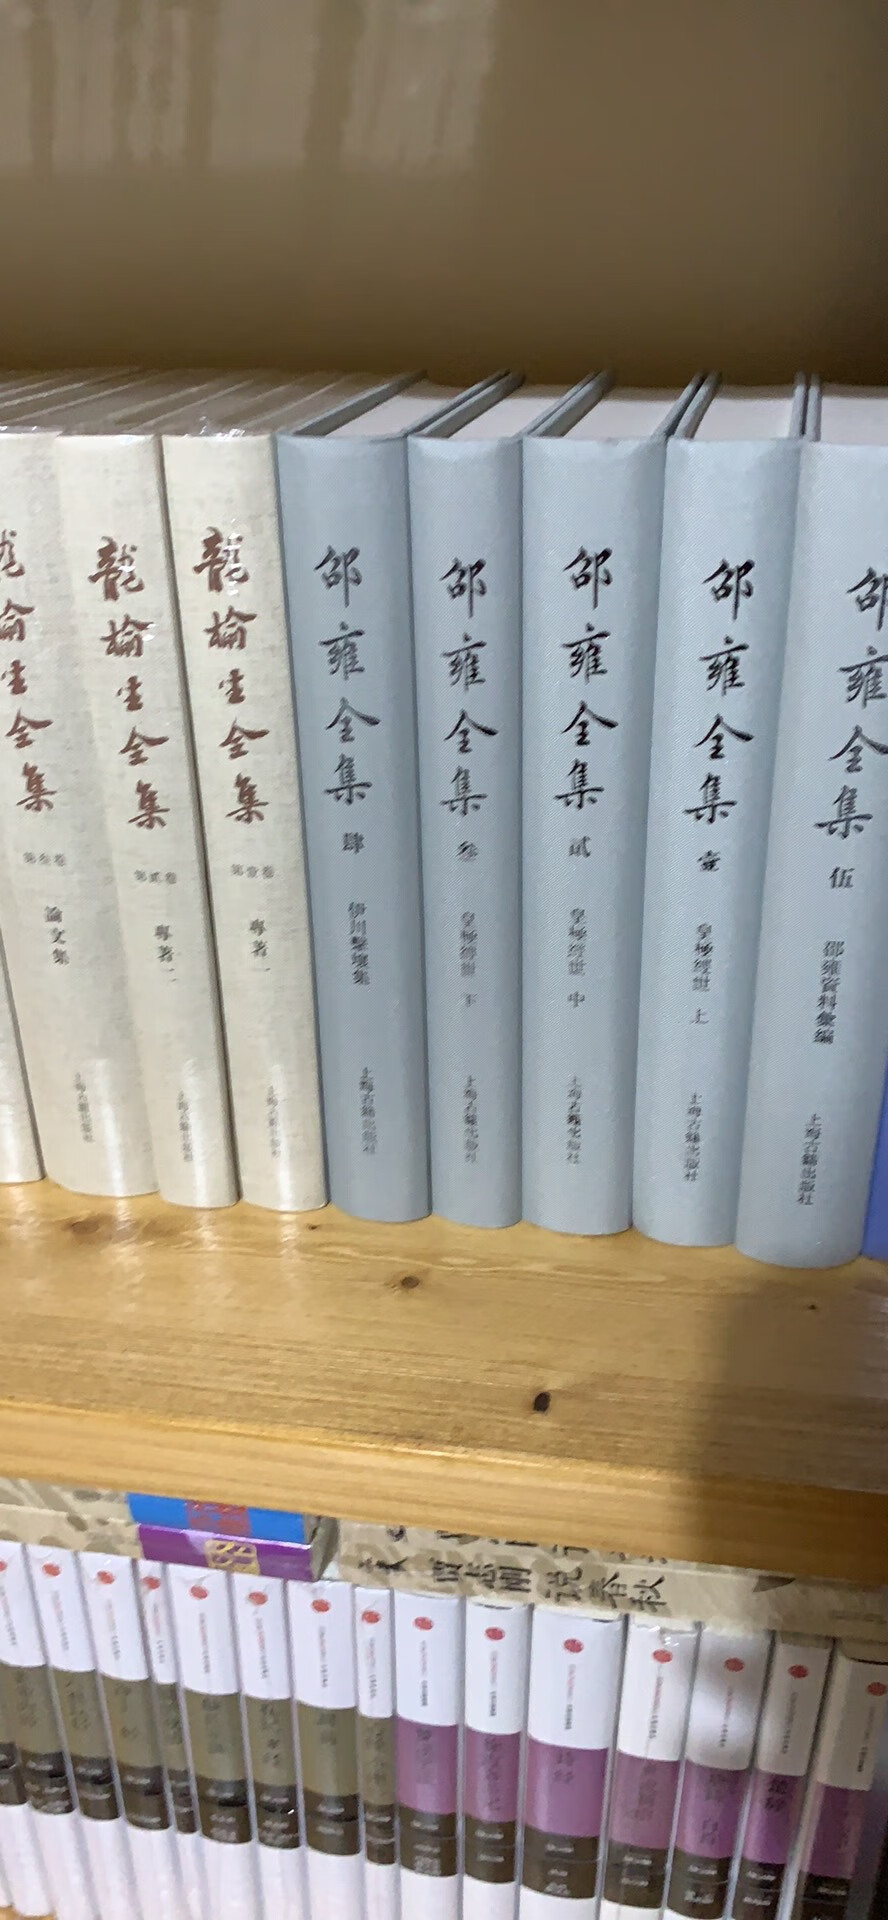 《战国策笺证》，上海古籍出版社2018年7月1版1刷。读了前两条，第二条注〔一六〕，详细周备，读来觉酣畅。